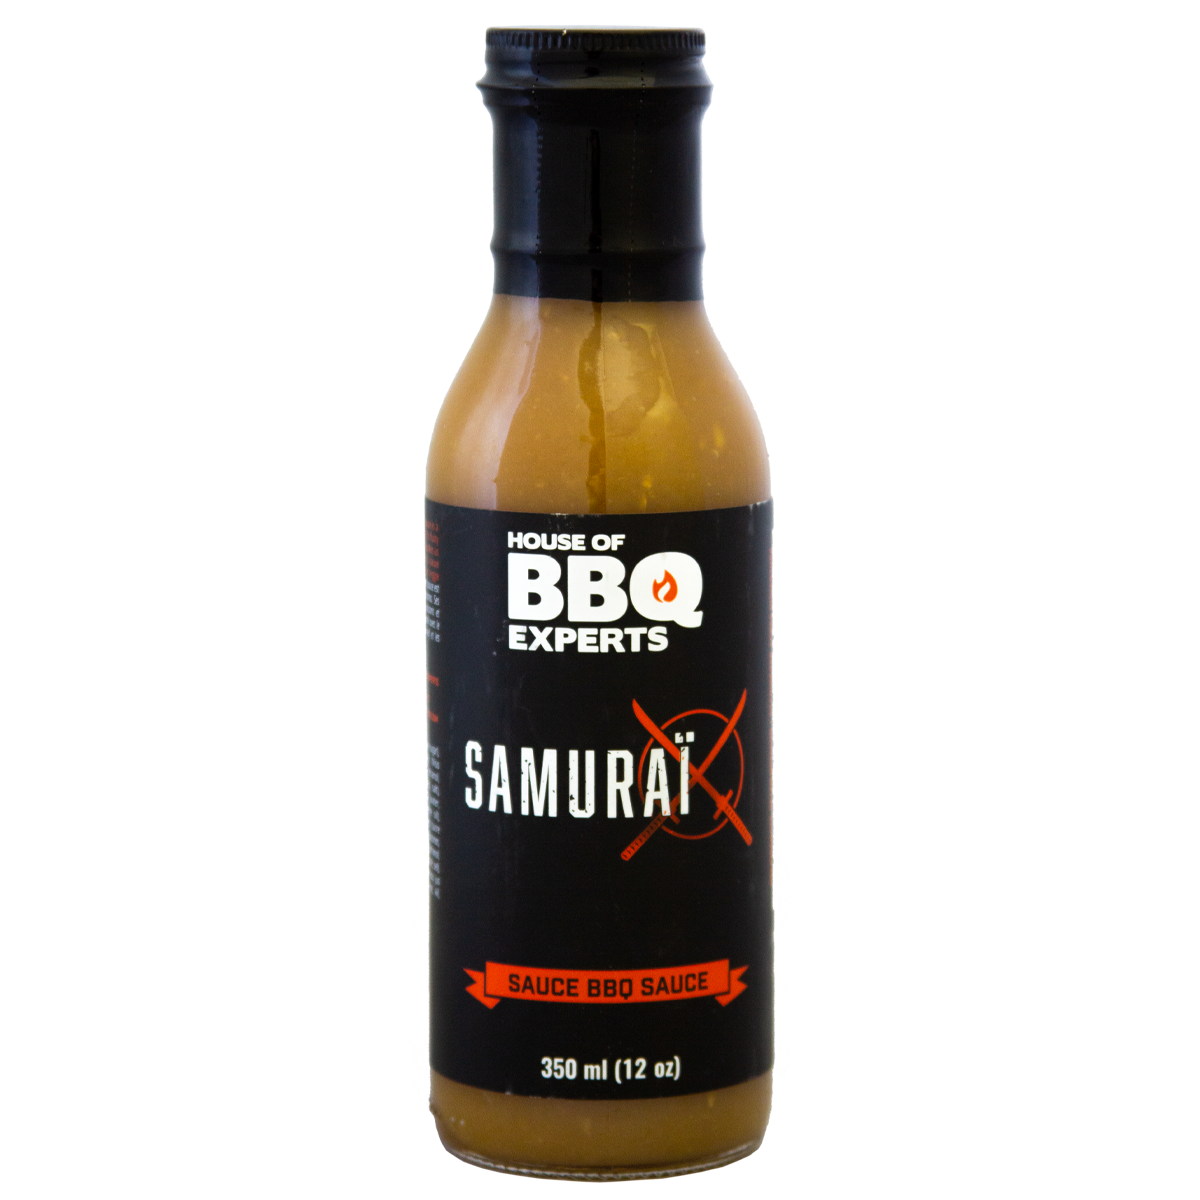 House of BBQ Experts Samurai Sauce